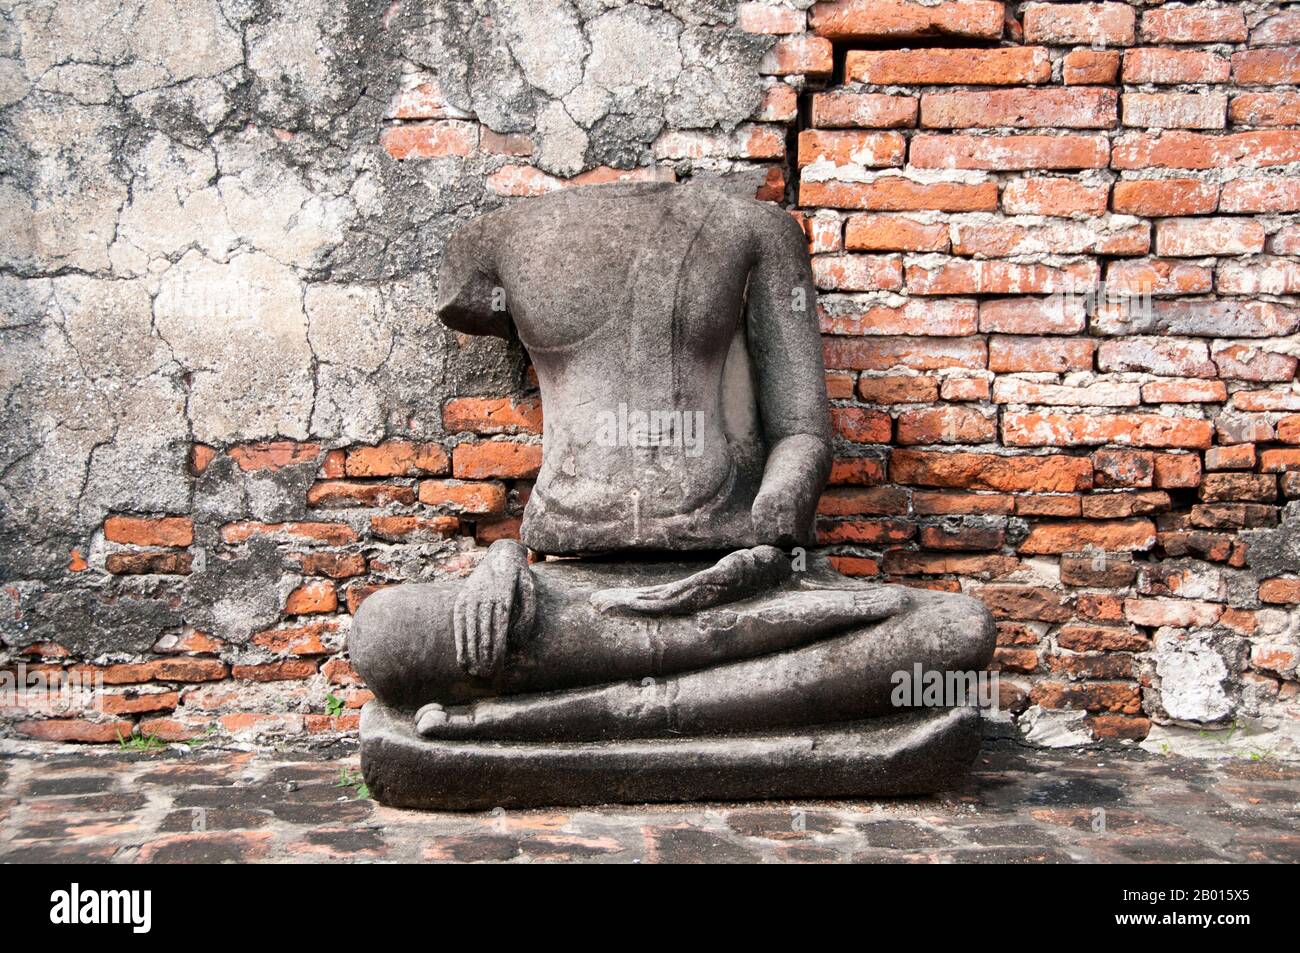 Thailandia: Buddha senza testa, Wat Phra Mahathat, Ayutthaya Historical Park. Wat Phra Mahathat fu costruito durante il regno di Borommaracha i (Boromma Rachathirat i) o Khun Luang Pa Ngua (1370-1388), che era il terzo re del regno di Ayutthaya. Ayutthaya (Ayudhya) era un regno siamese che esisteva dal 1351 al 1767. Ayutthaya era amichevole verso i commercianti stranieri, compreso il cinese, vietnamita (Annamese), indiani, giapponesi e persiani, E poi i portoghesi, spagnoli, olandesi e francesi, permettendo loro di creare villaggi fuori dalle mura della città. Foto Stock